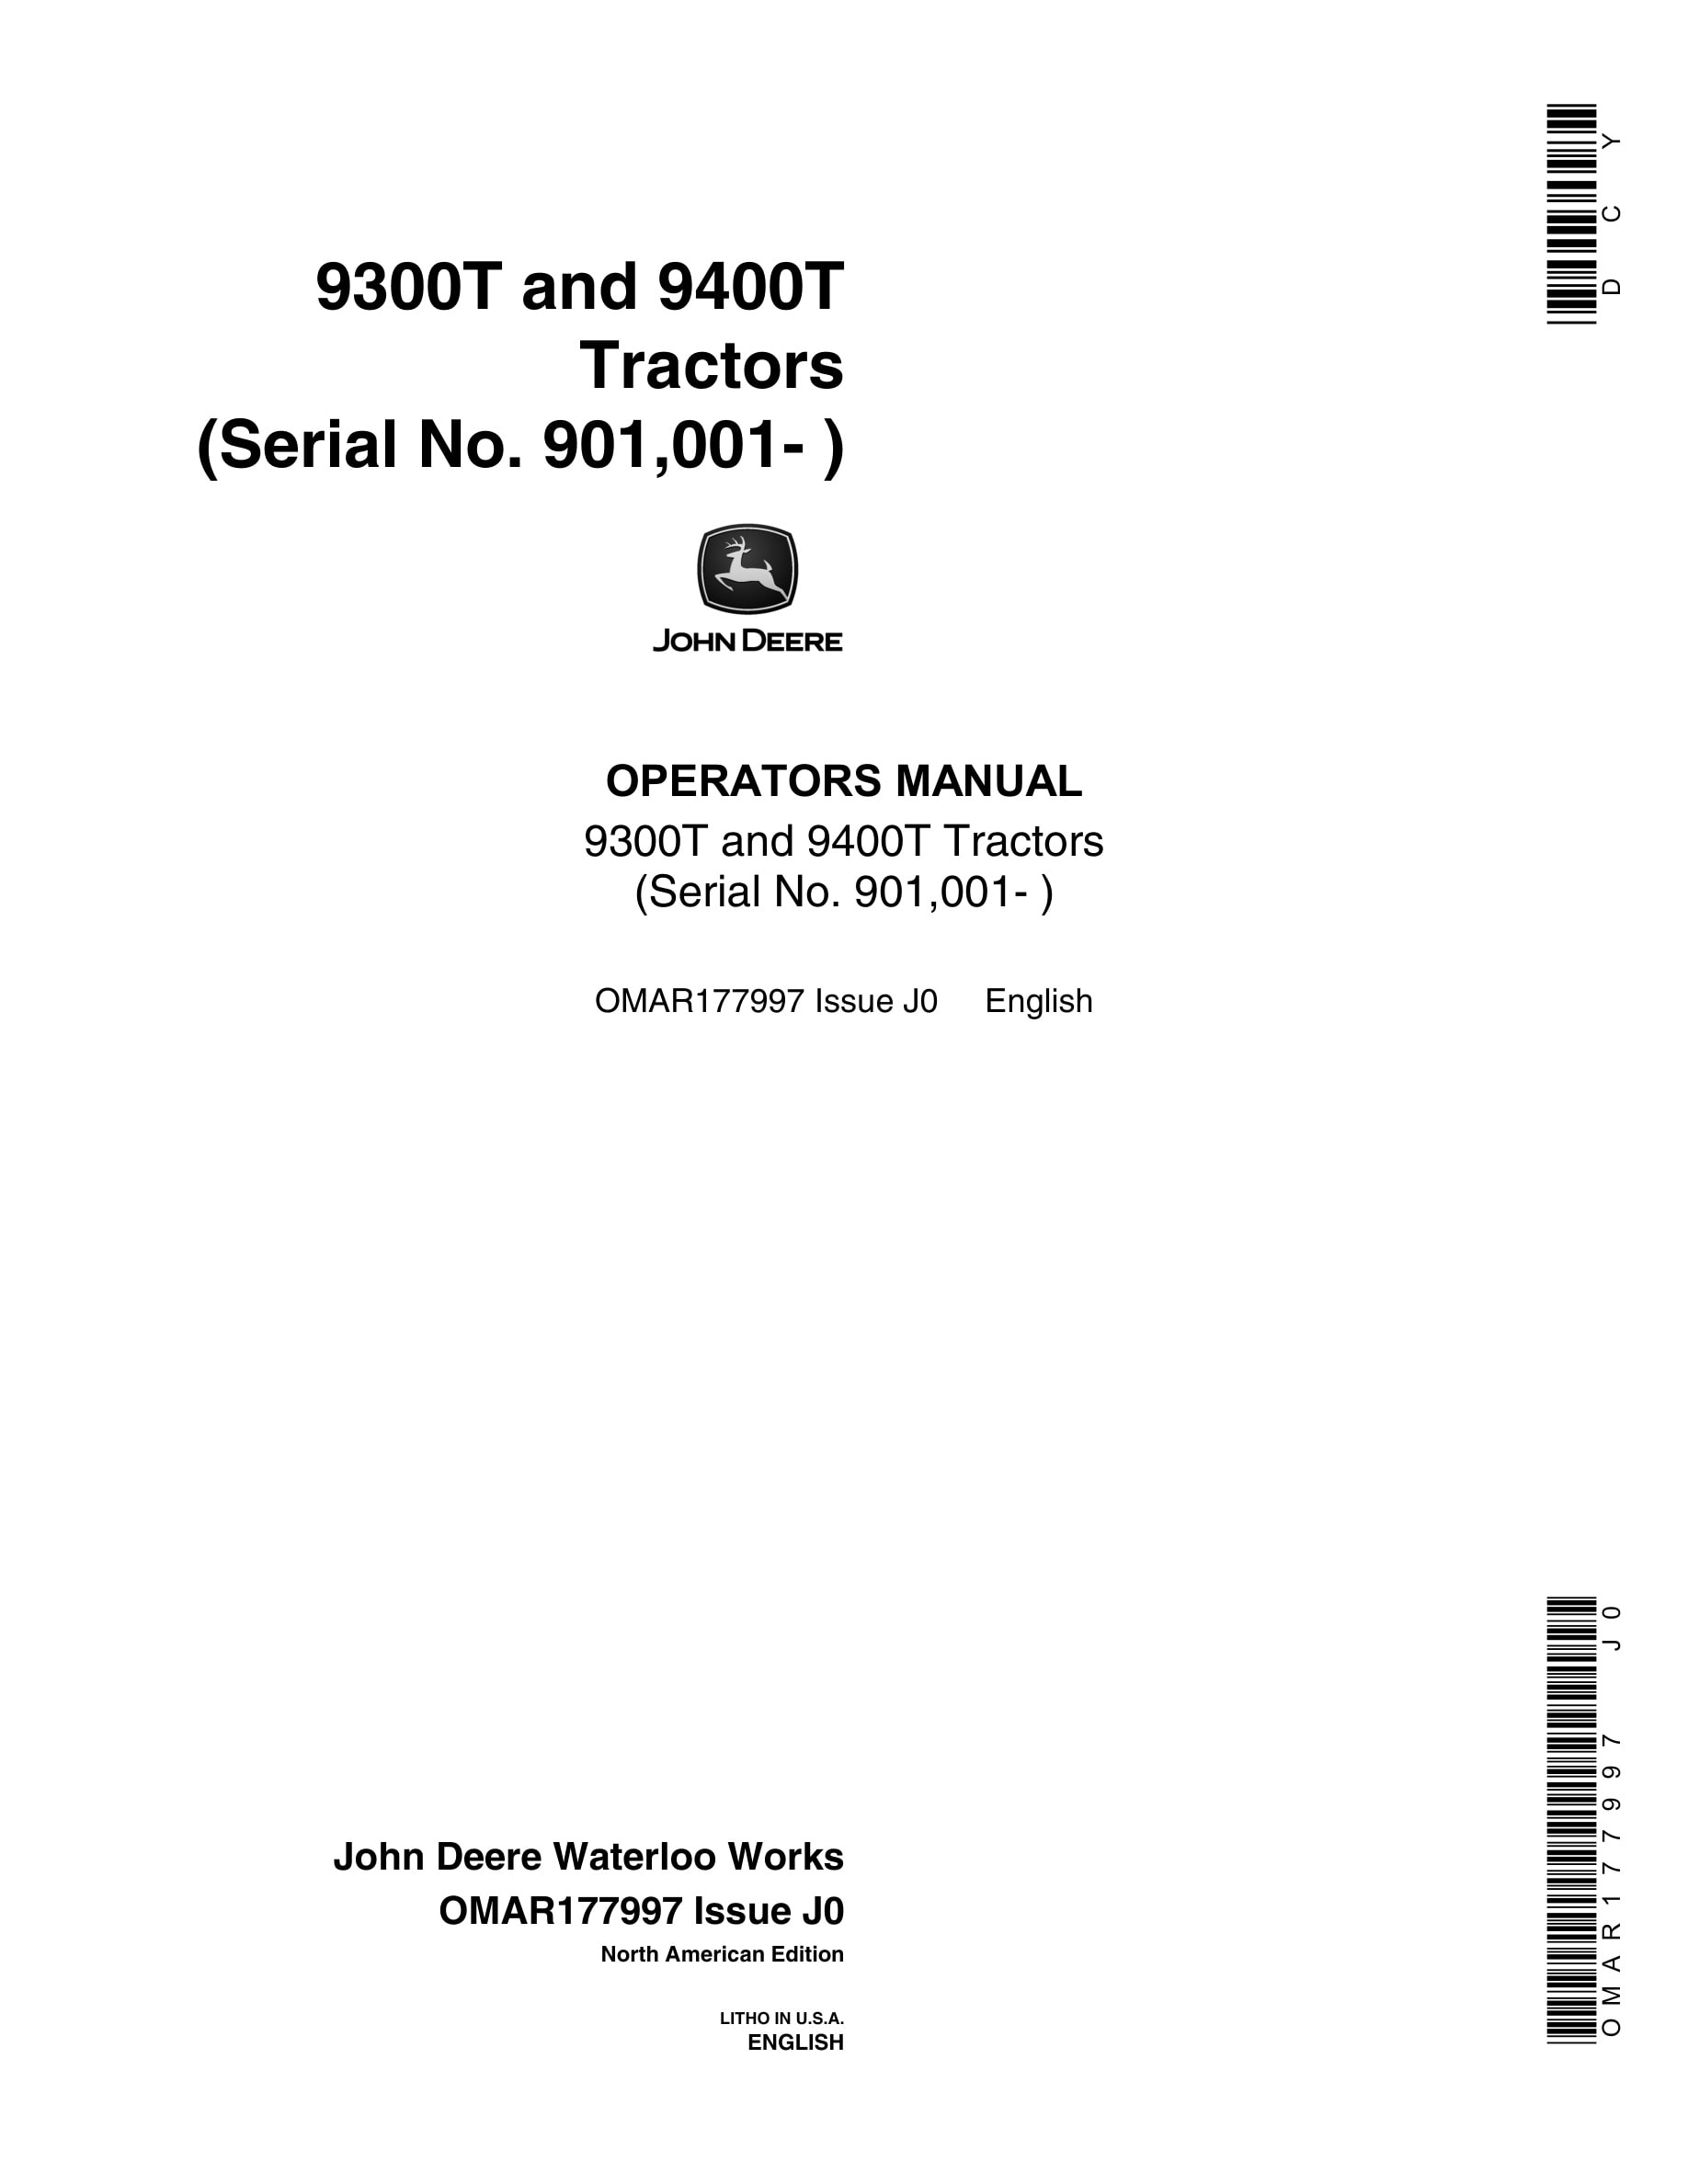 John Deere 9300T and 9400T Tractor Operator Manual OMAR177997-1